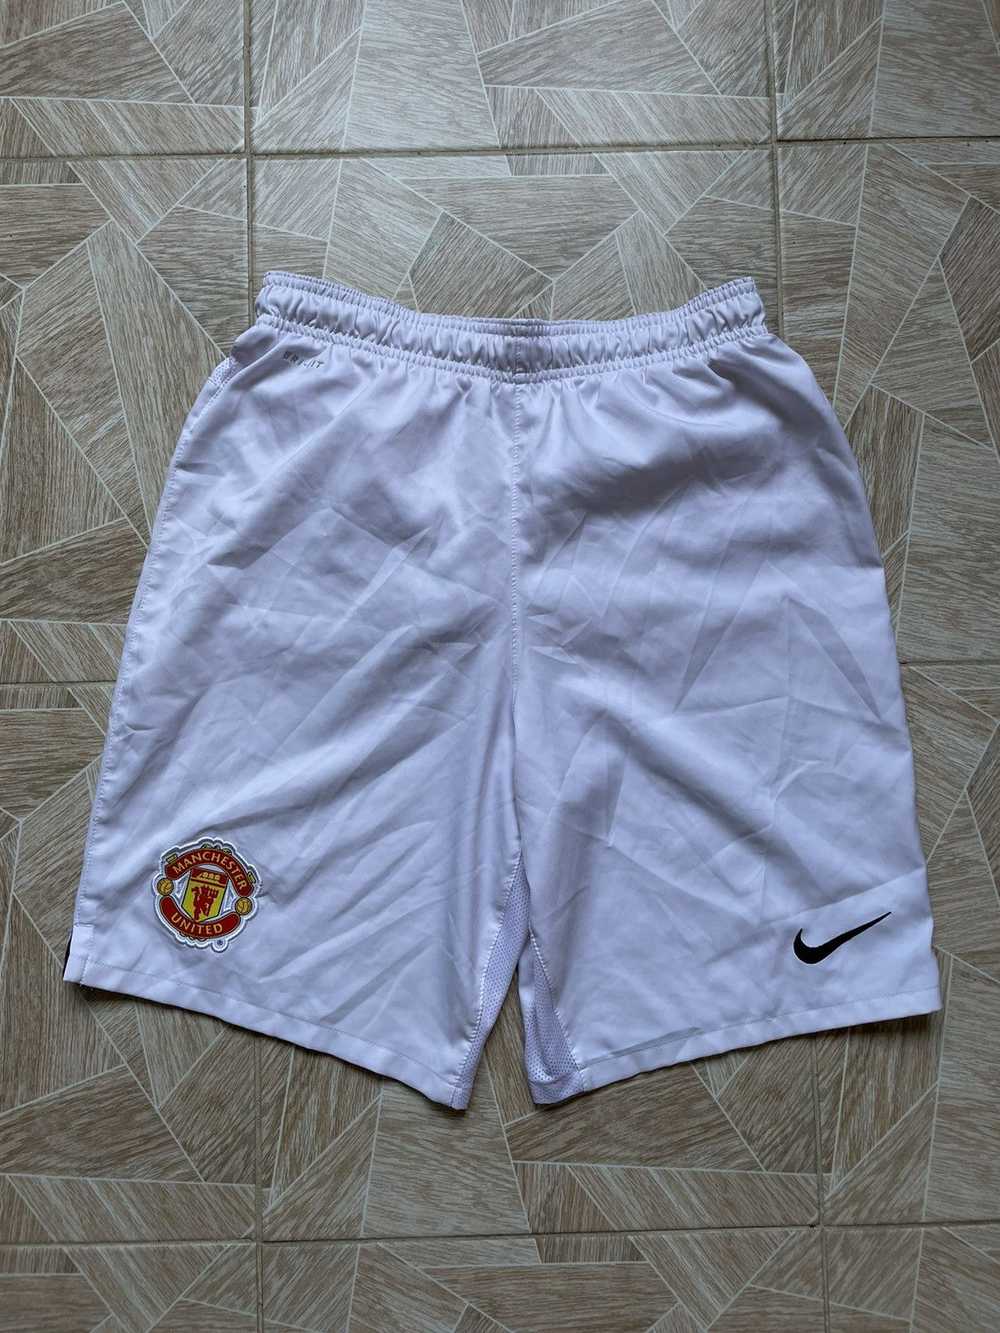 Manchester United × Nike × Vintage Vintage 90s Ni… - image 1